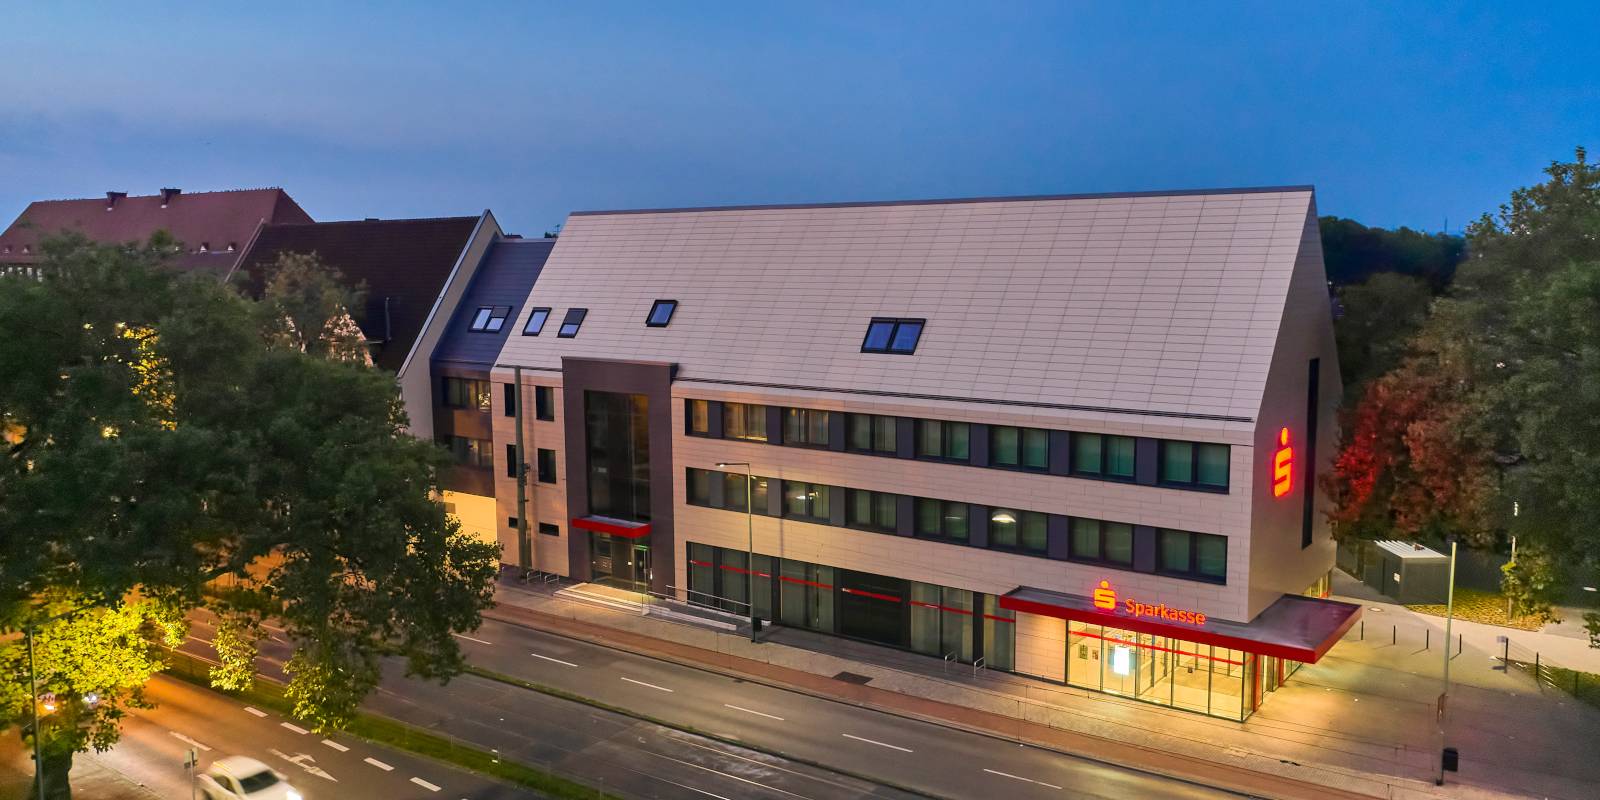 Luftaufnahme des Gebäudes der Sparkasse Duisburg mit der Keramikfassade von Tonality